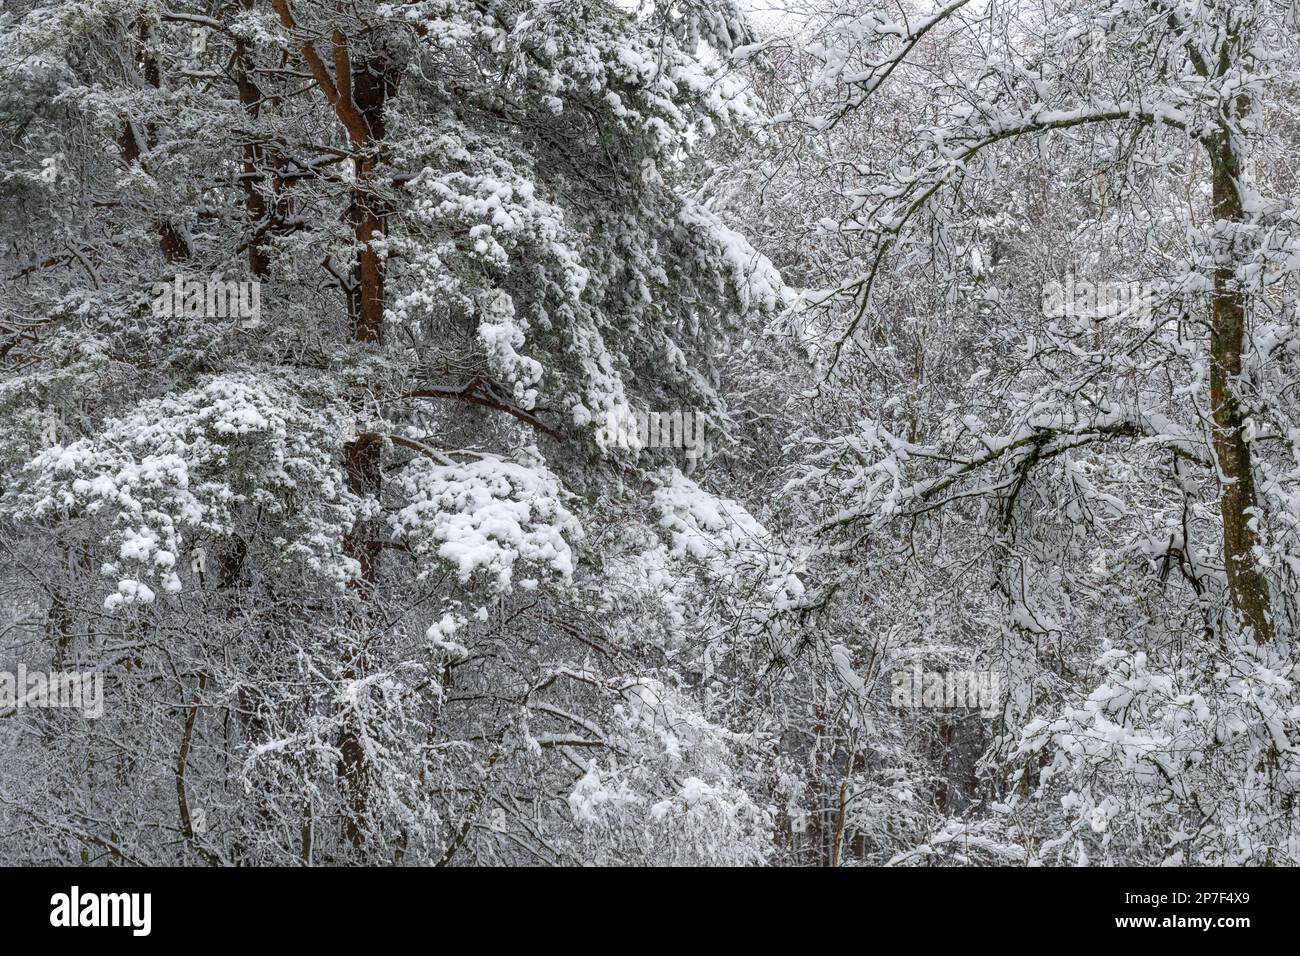 Scène de neige en forêt ou dans les bois au Caesar's Camp, Hampshire, Angleterre, Royaume-Uni, 8th mars 2023. Paysage de campagne enneigé. Banque D'Images